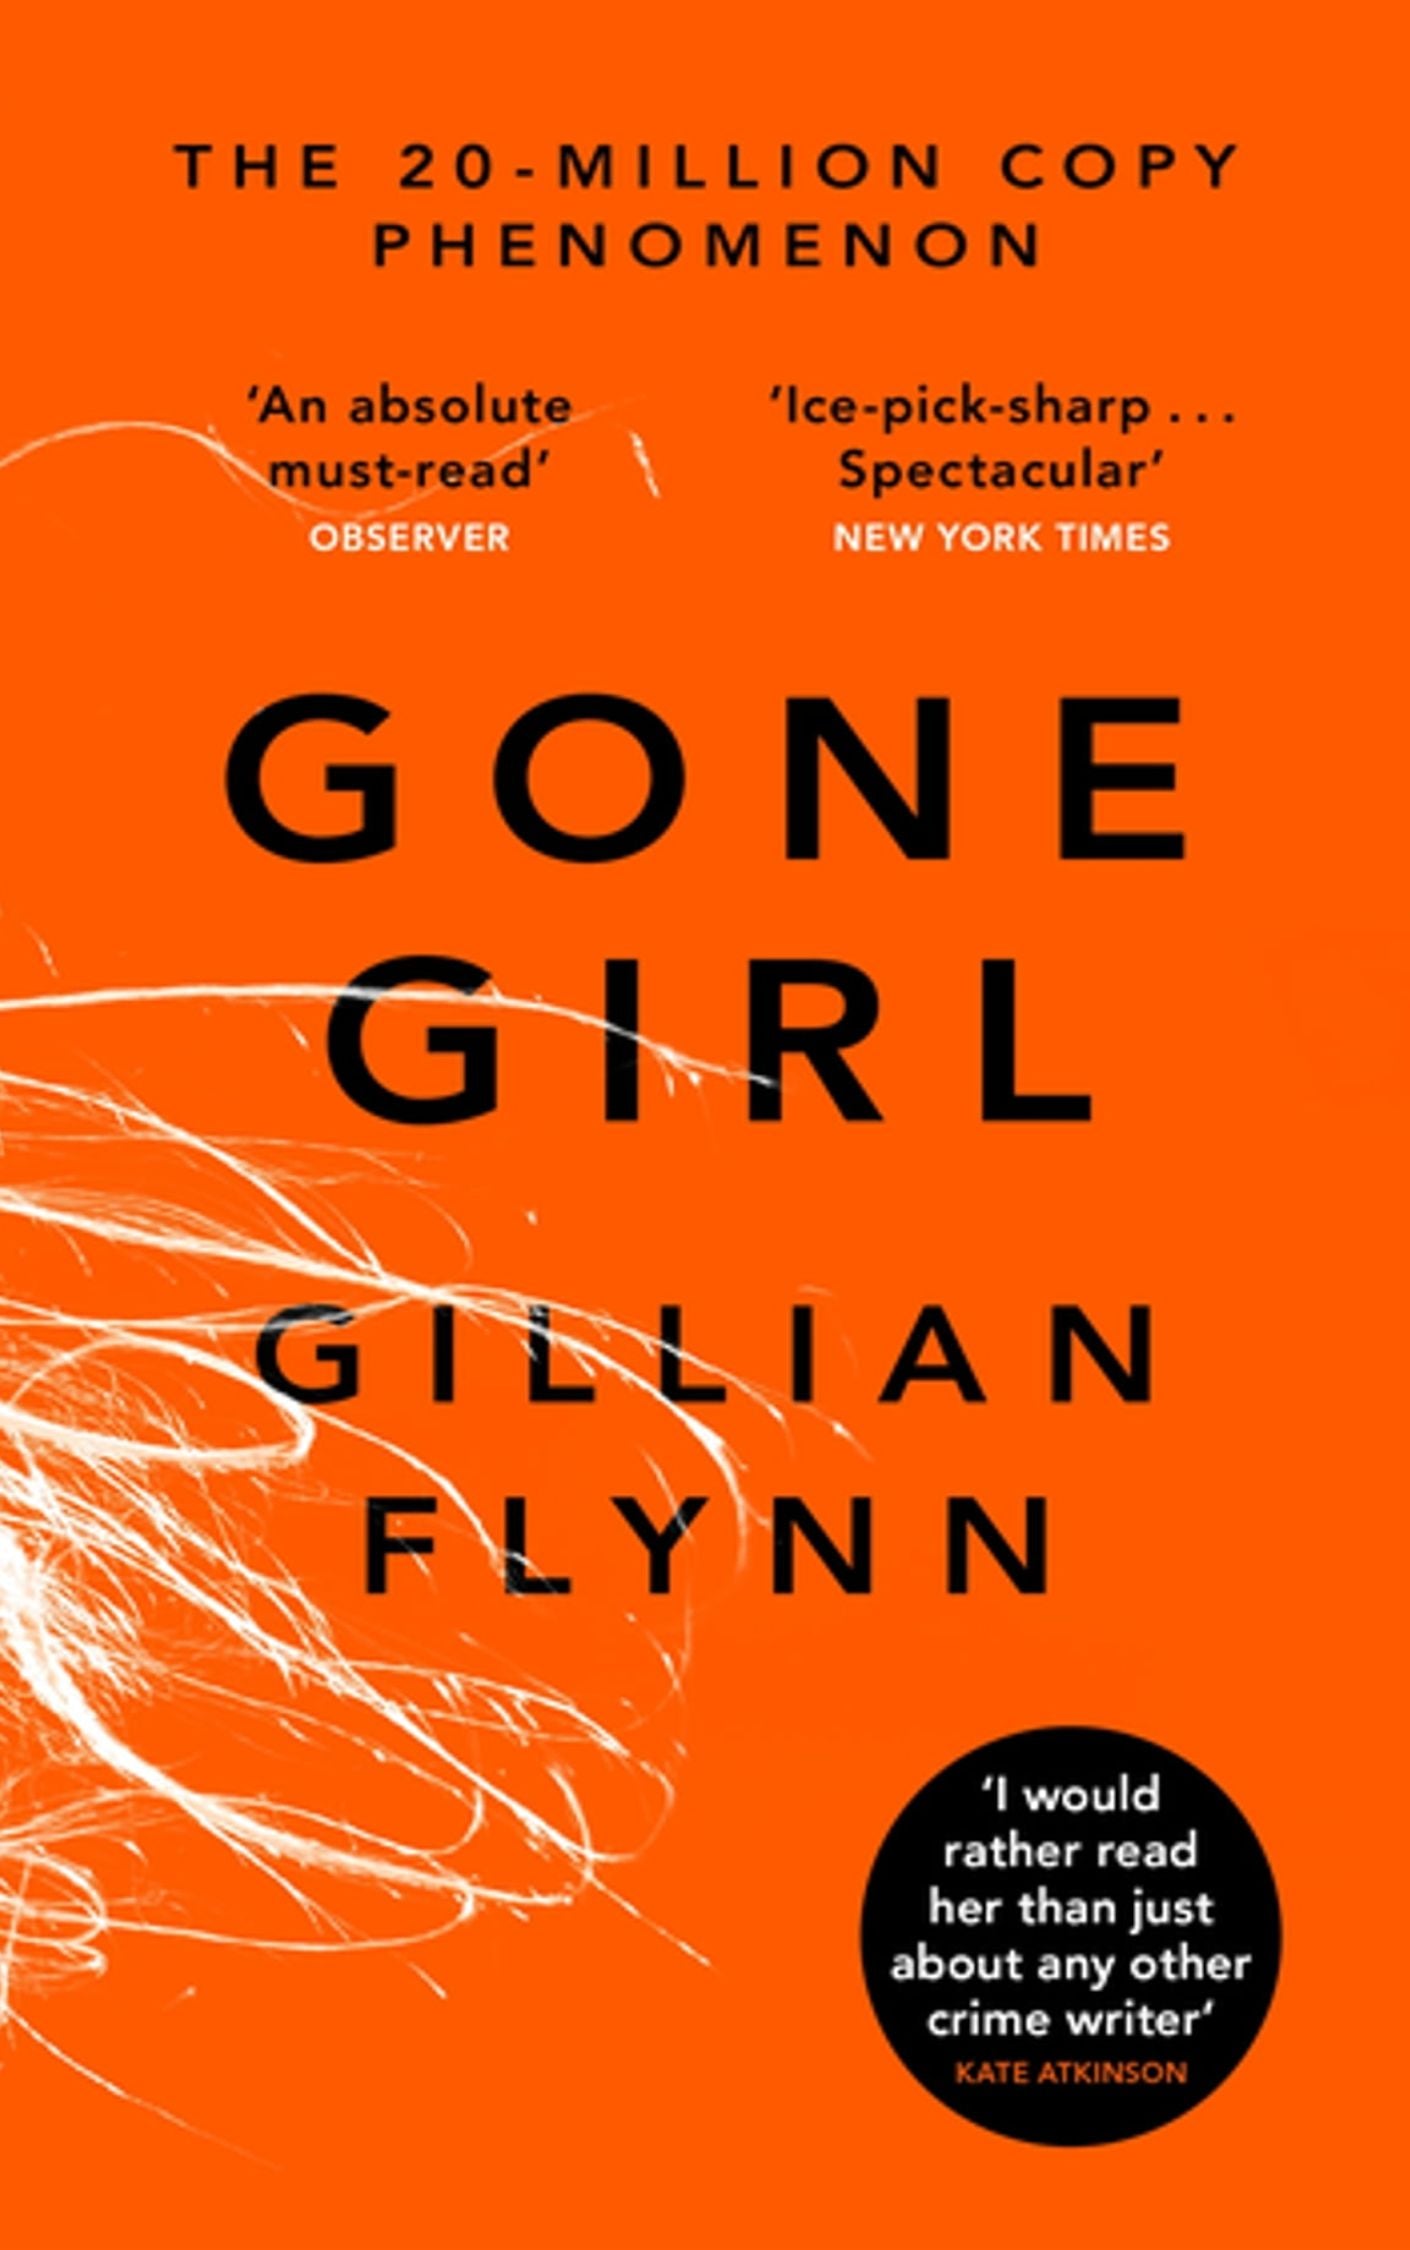 "Gone Girl" by Gillian Flynn: Books for Women